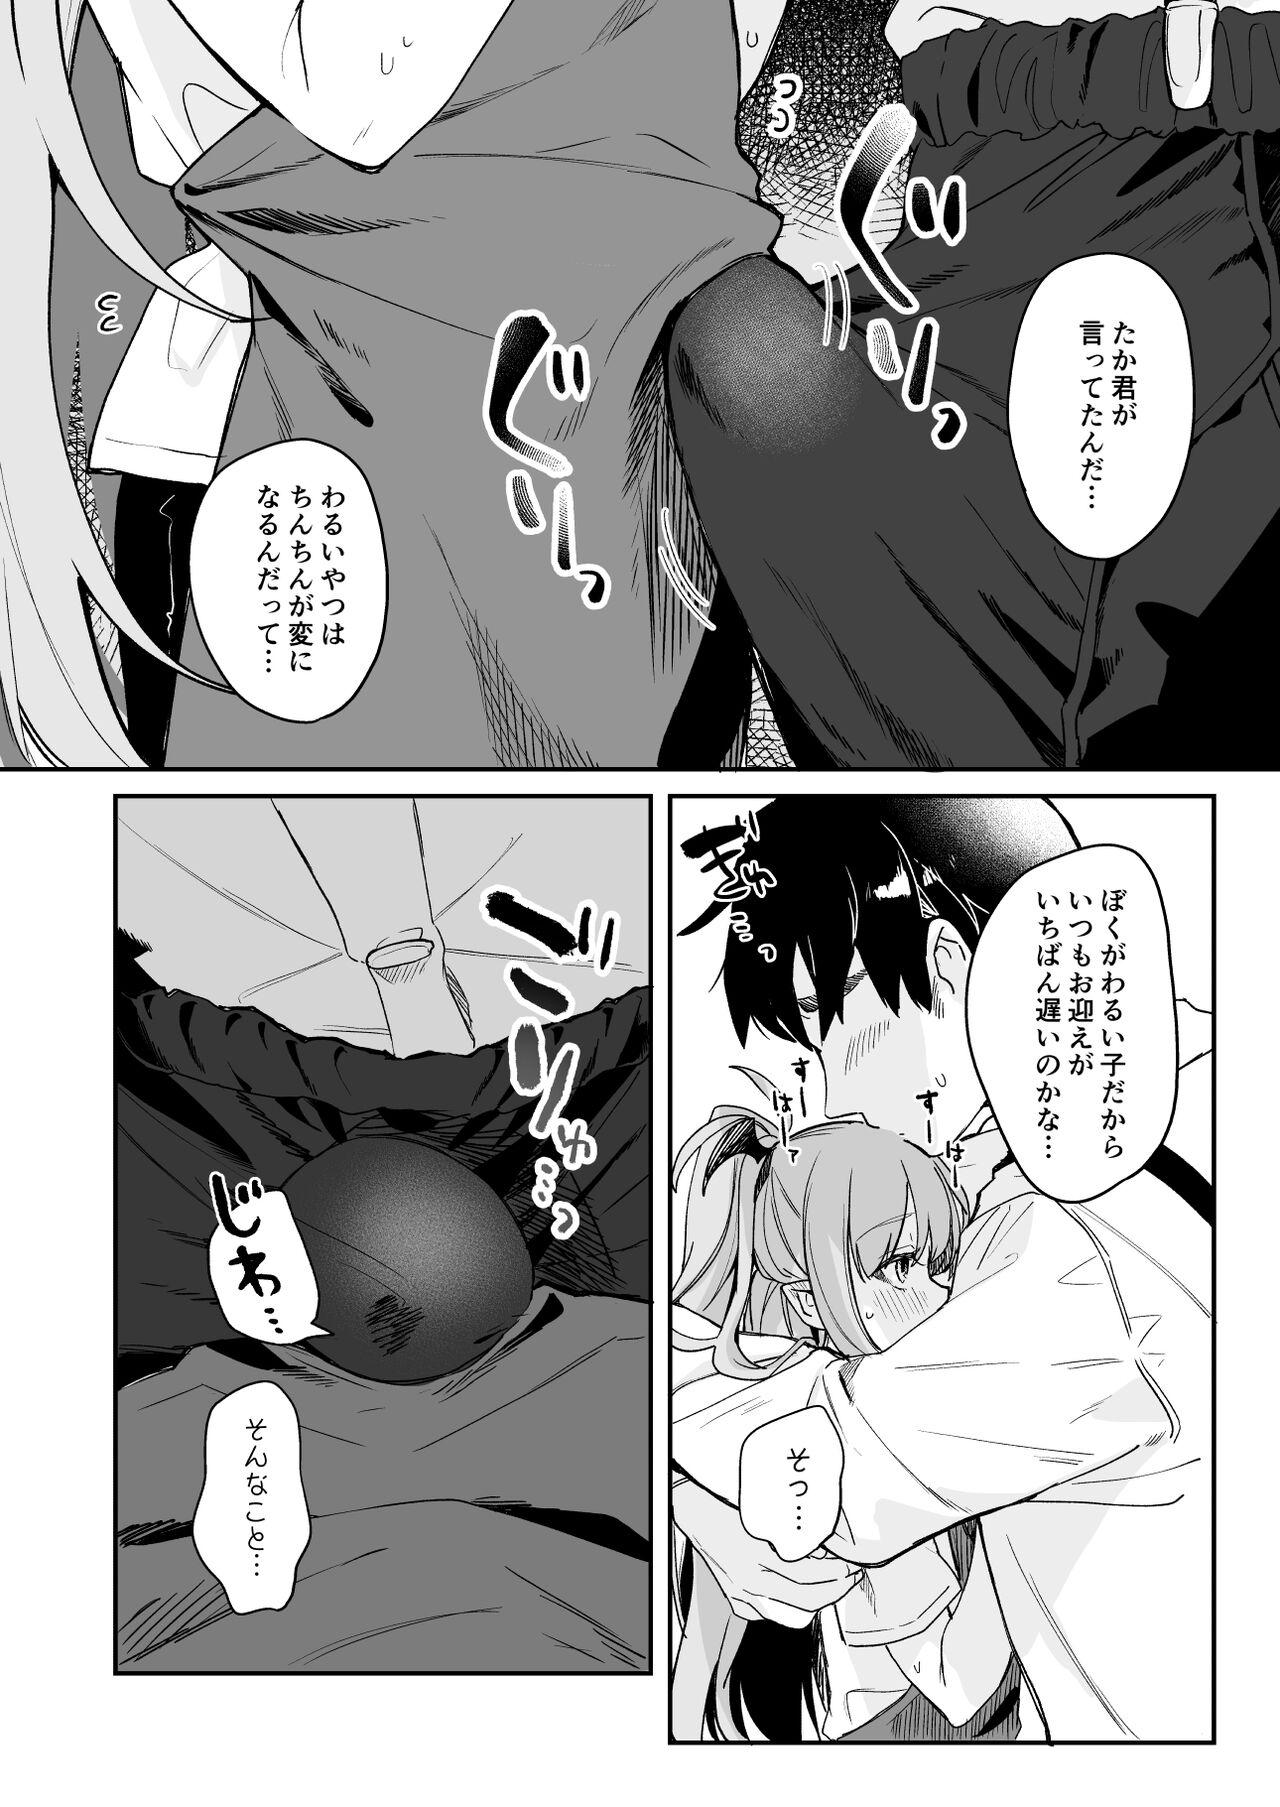 Flashing [Tamano Kedama] Kodomo no Hi (Imishin) ni Mukete Manga o Kaku - Original Transex - Page 6